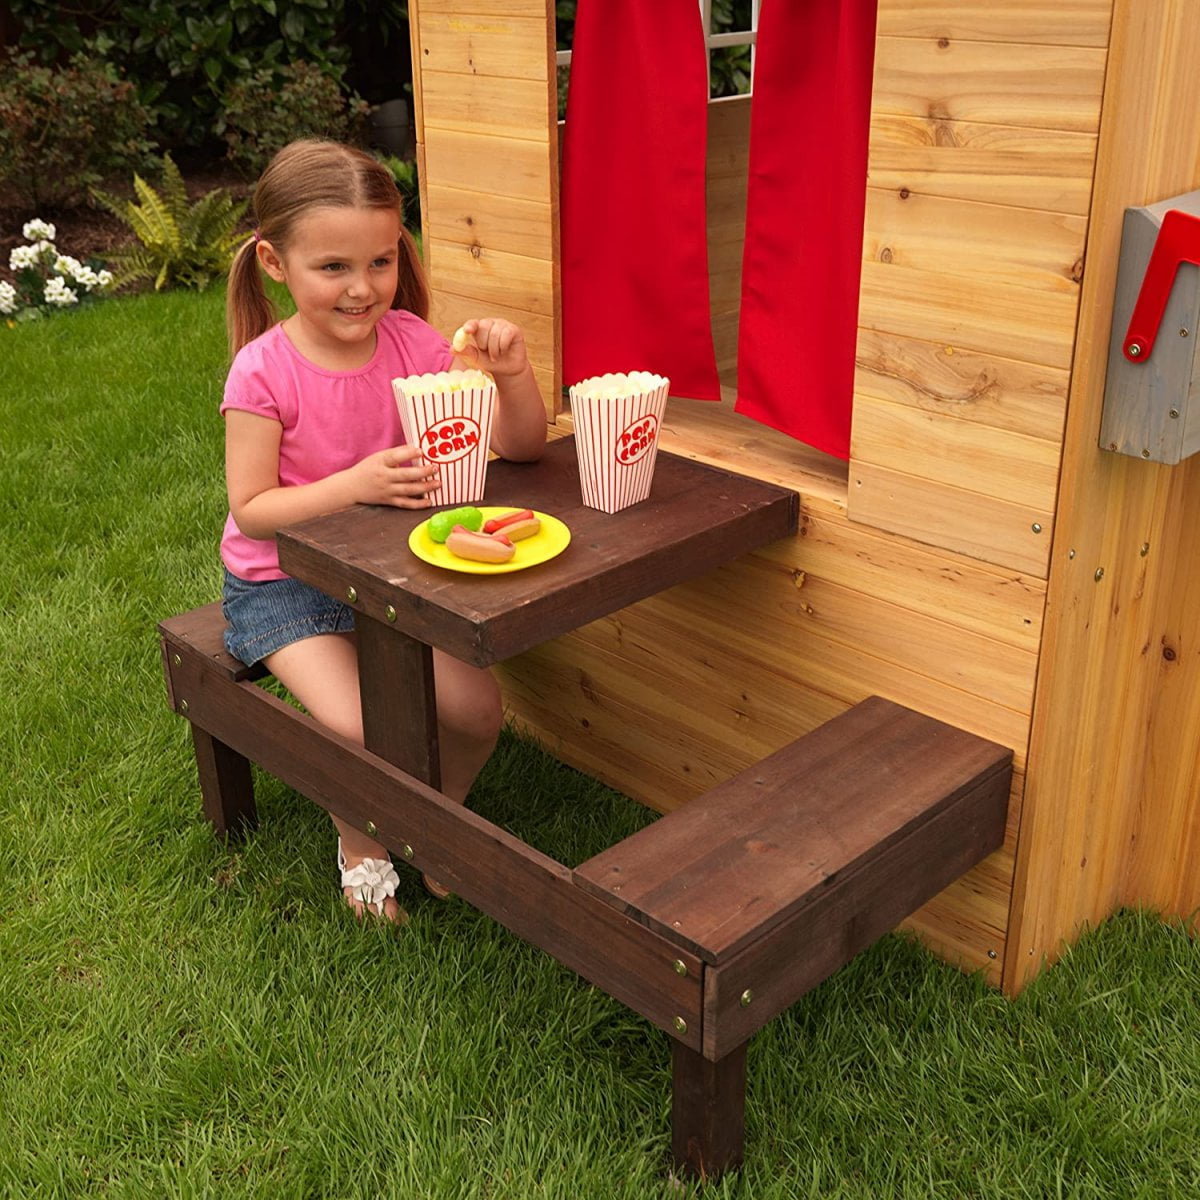  Cabane en bois pour enfants - Avec cuisine, table de pic-nic et accessoires